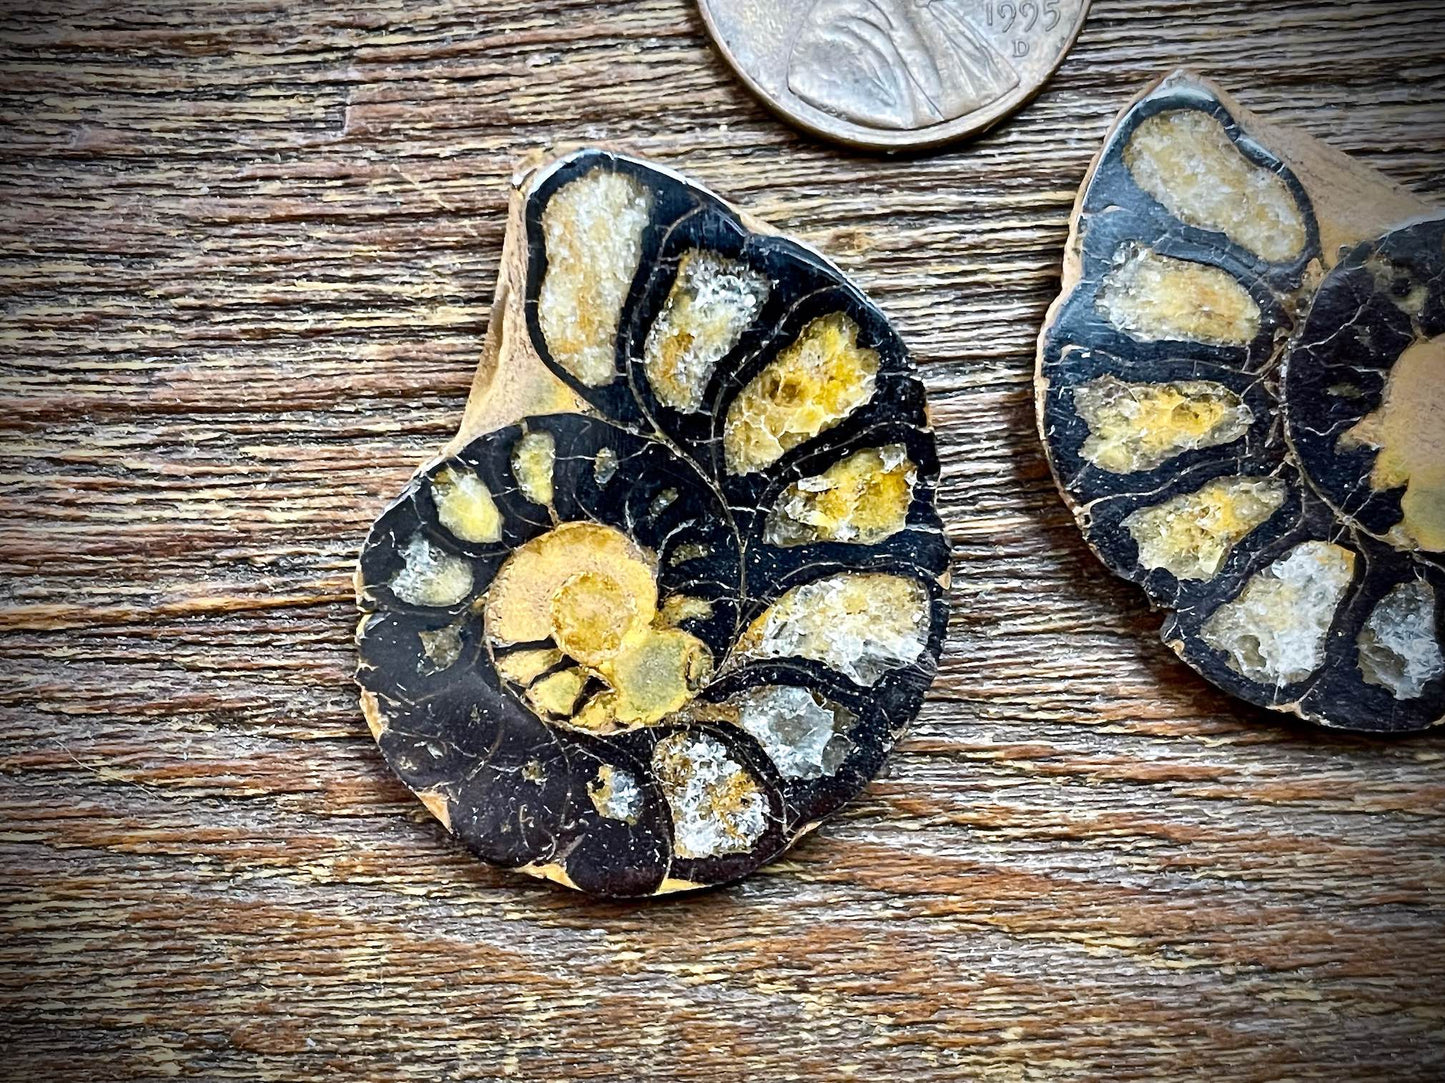 Small Ammonite Specimen/Fossil Pair